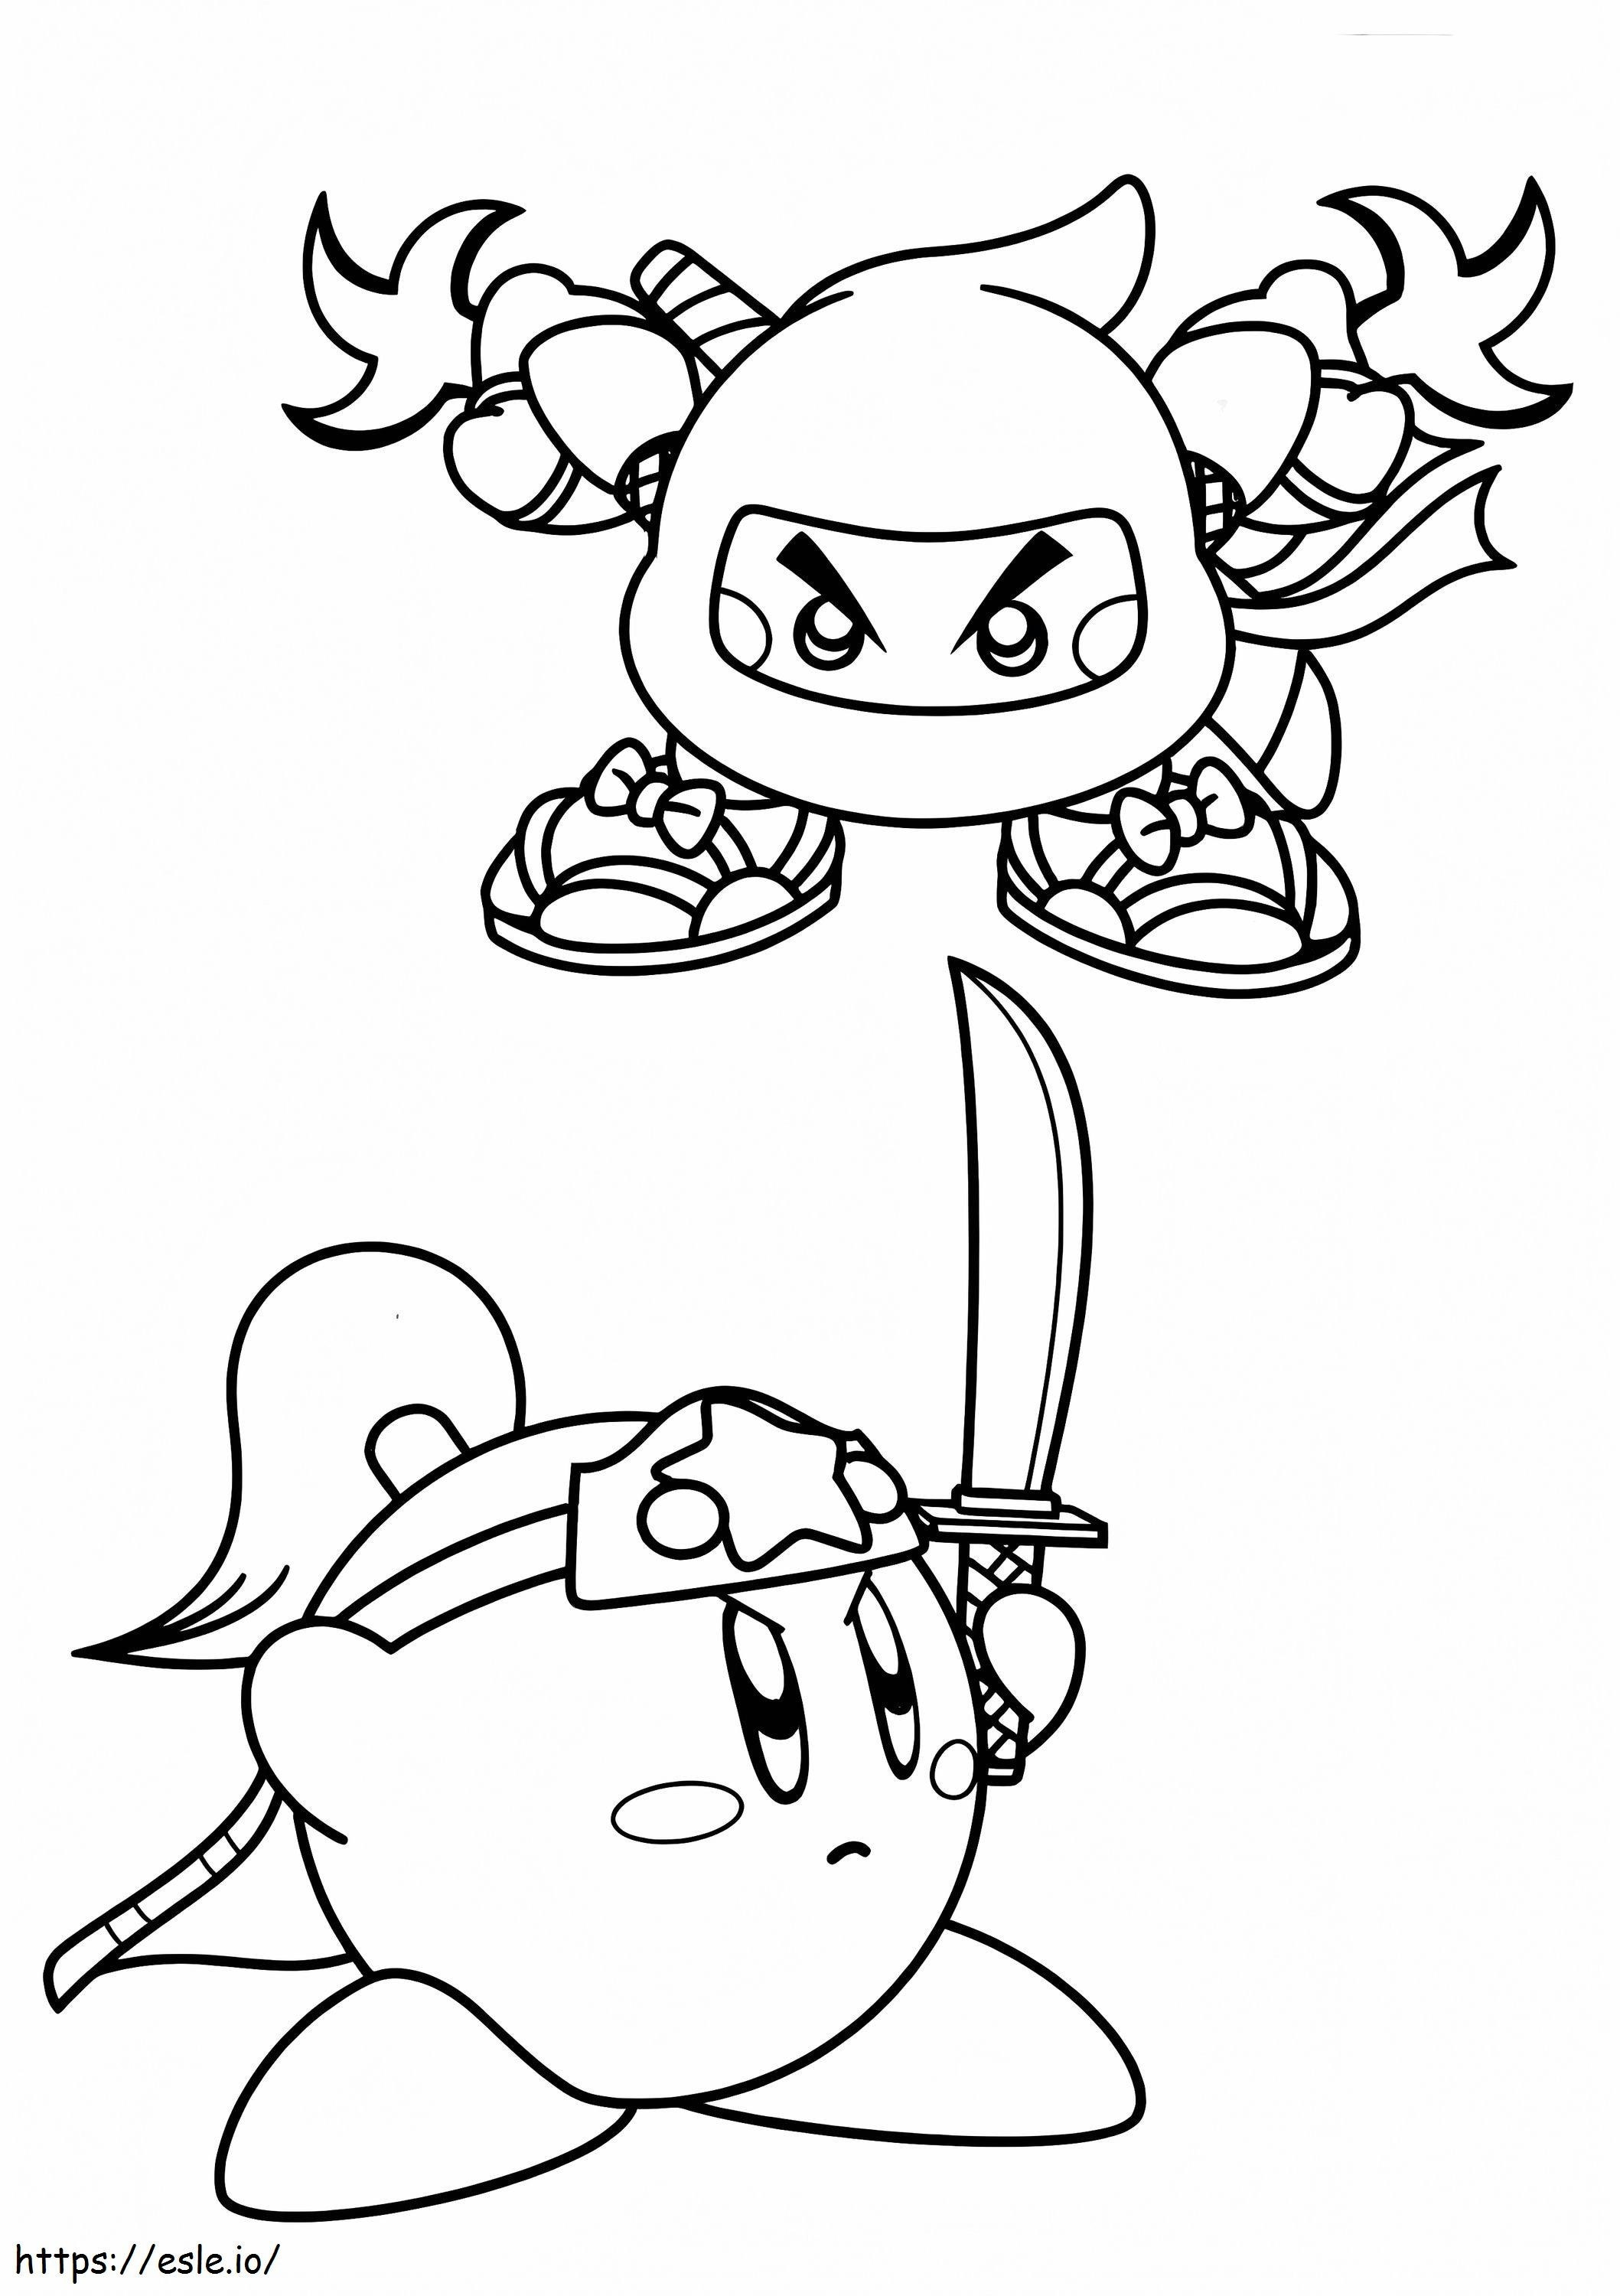 Kirby's twee ninja-skins kleurplaat kleurplaat